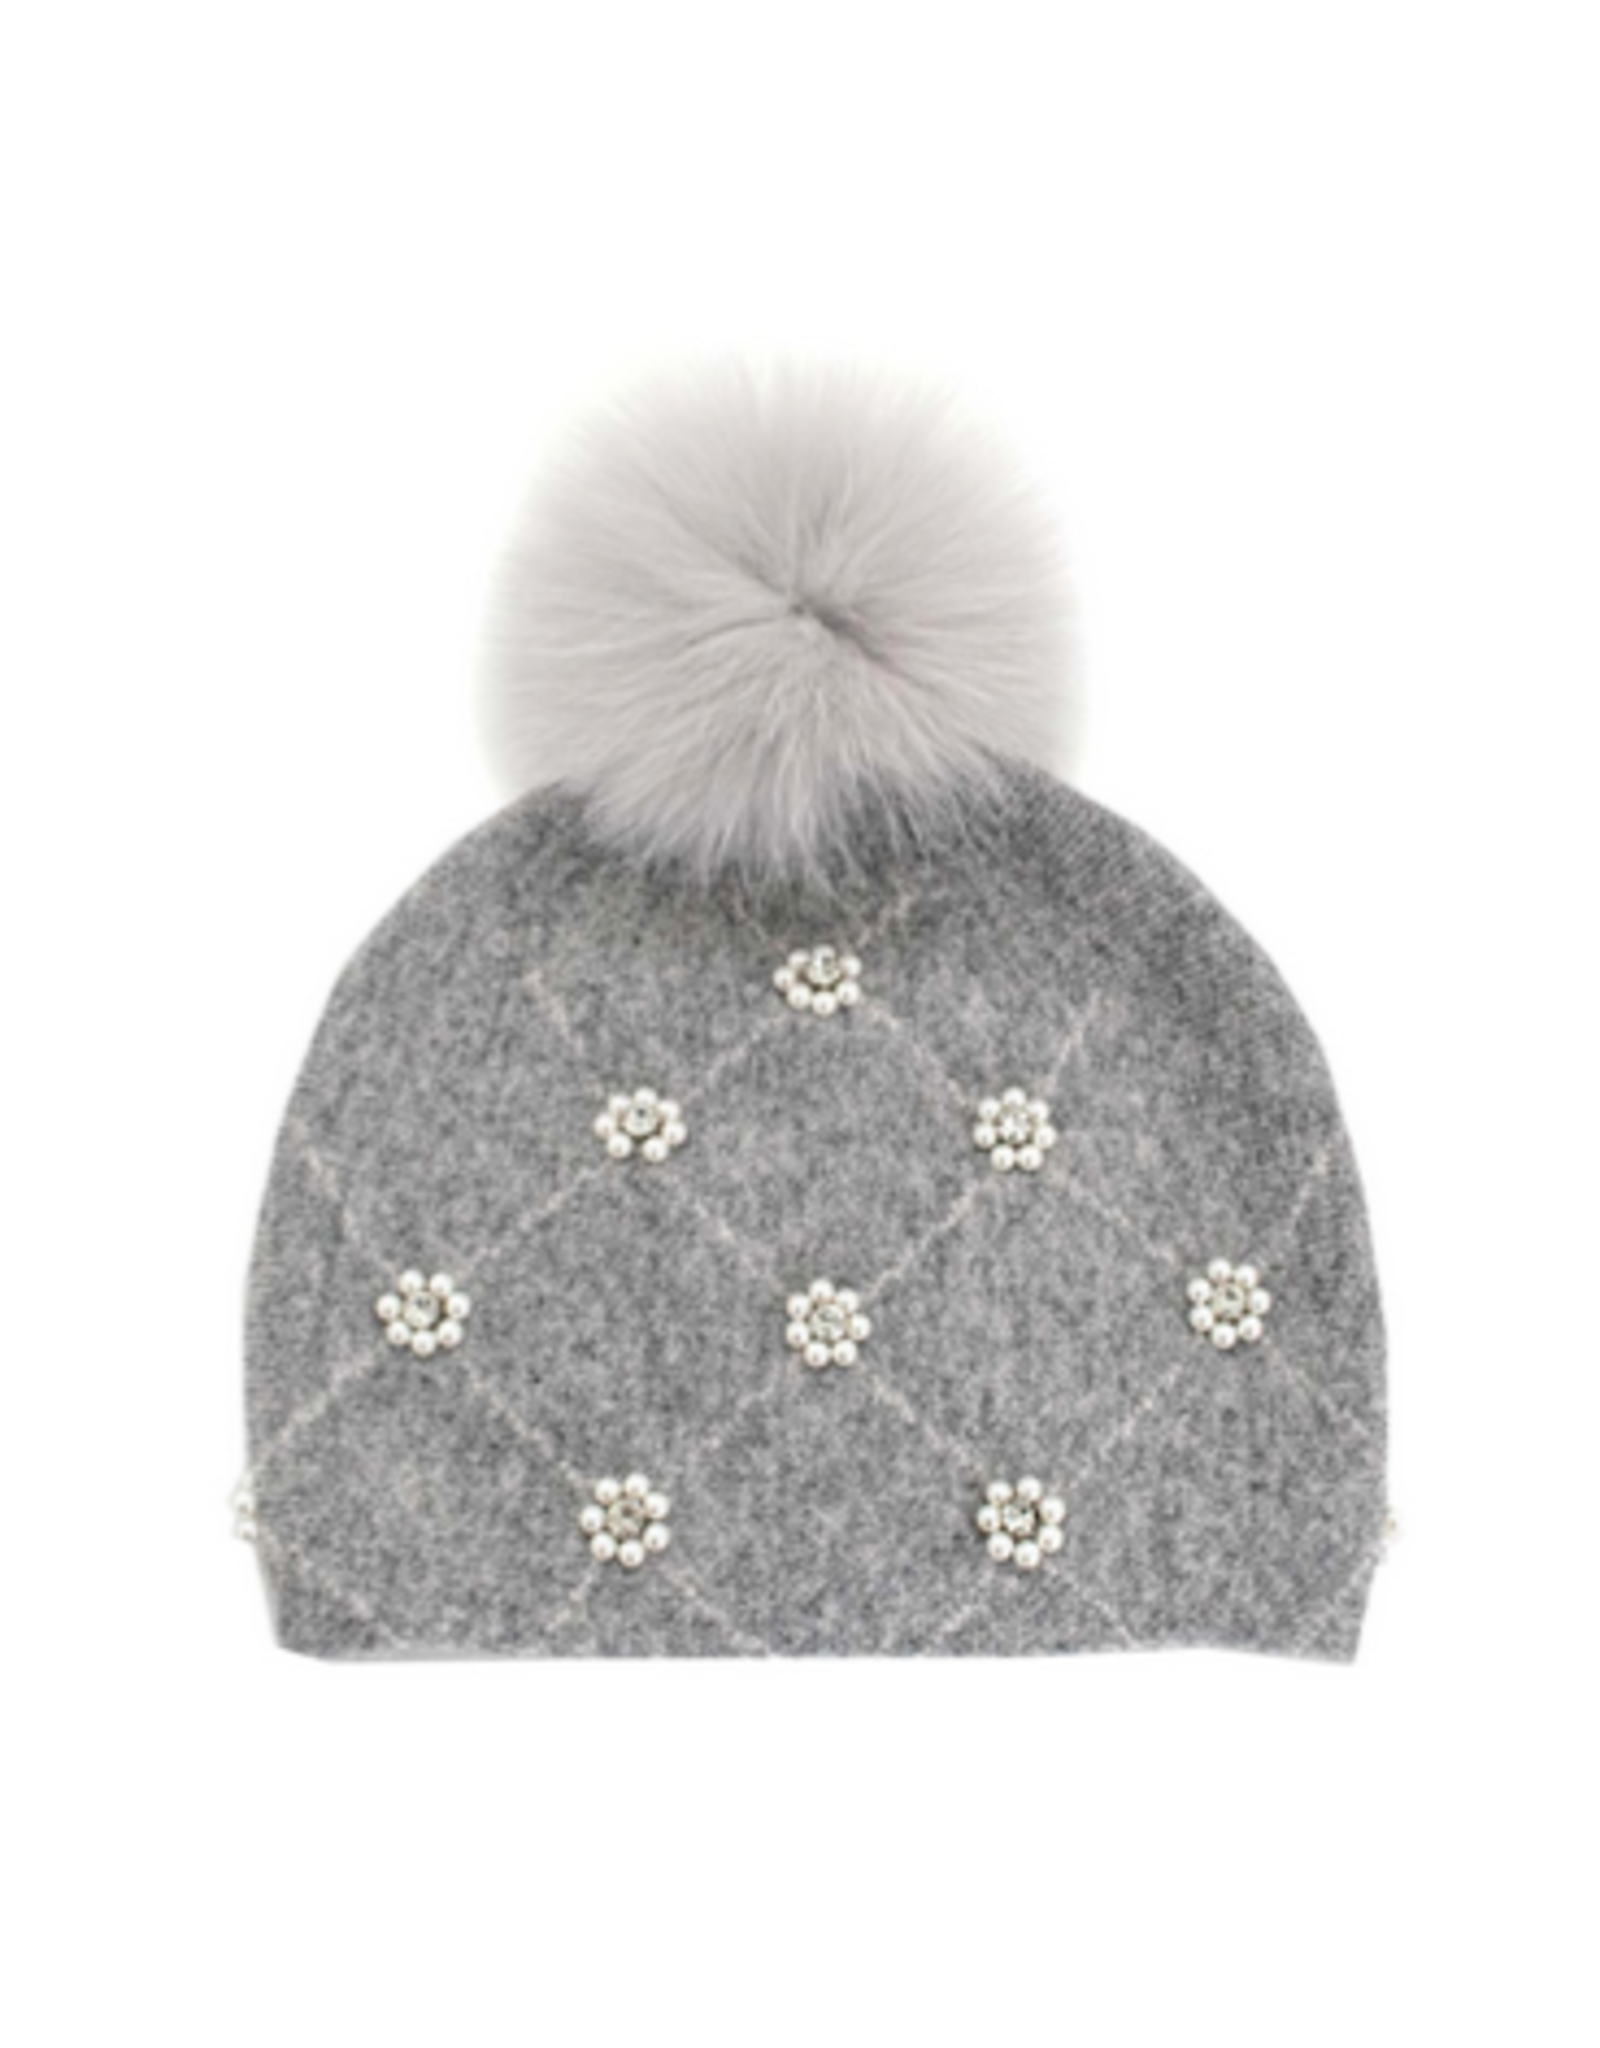 Wool Knit Hat with Pearls & Fox Pom-Pom - Grey